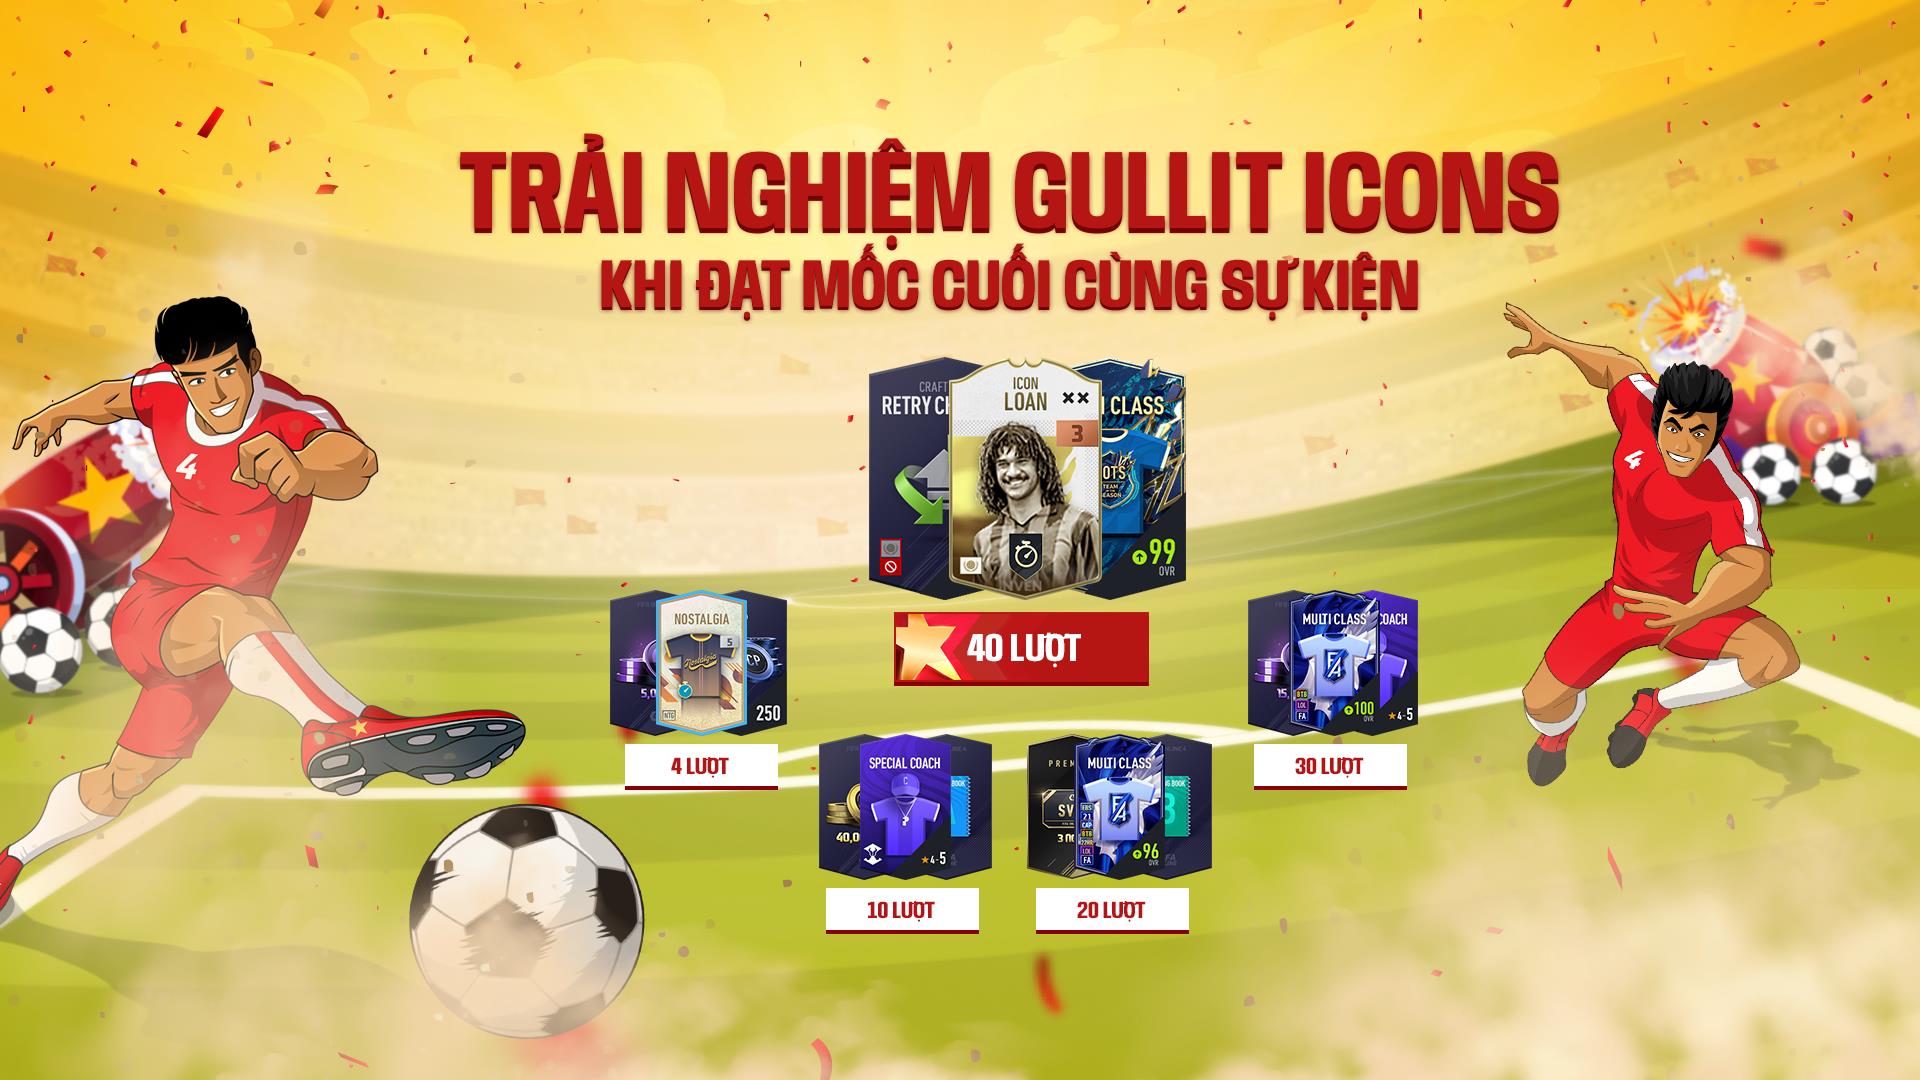 Người chơi FIFA Online có cơ hội nhận Airpod, Tay Cầm PS4 miễn phí nhân dịp Quốc Khánh - Ảnh 5.